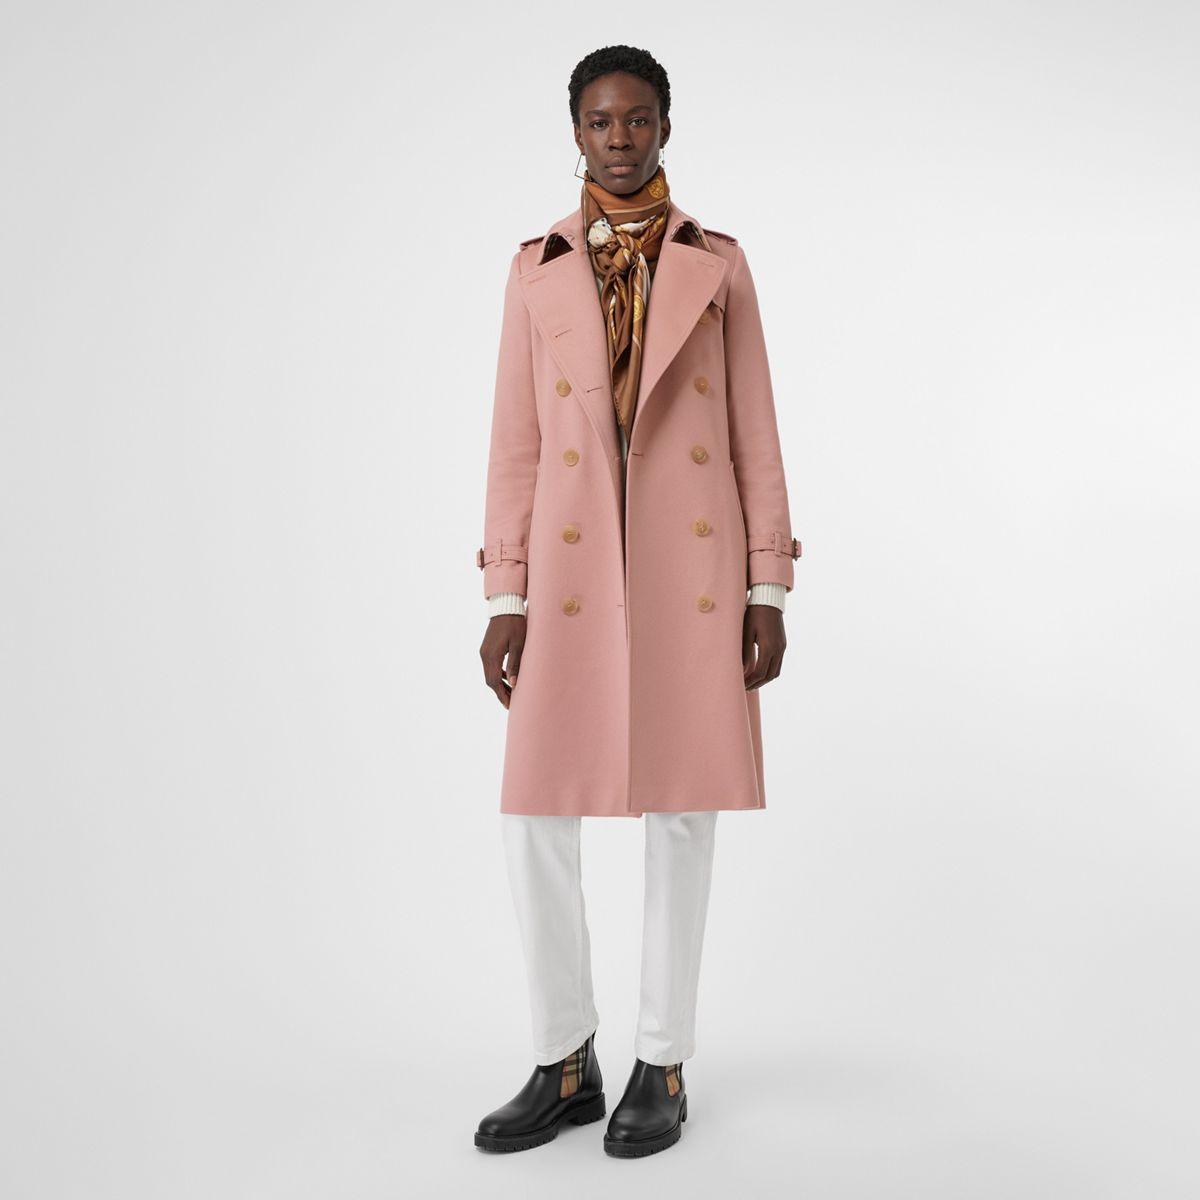 Top 73+ imagen pink burberry coat